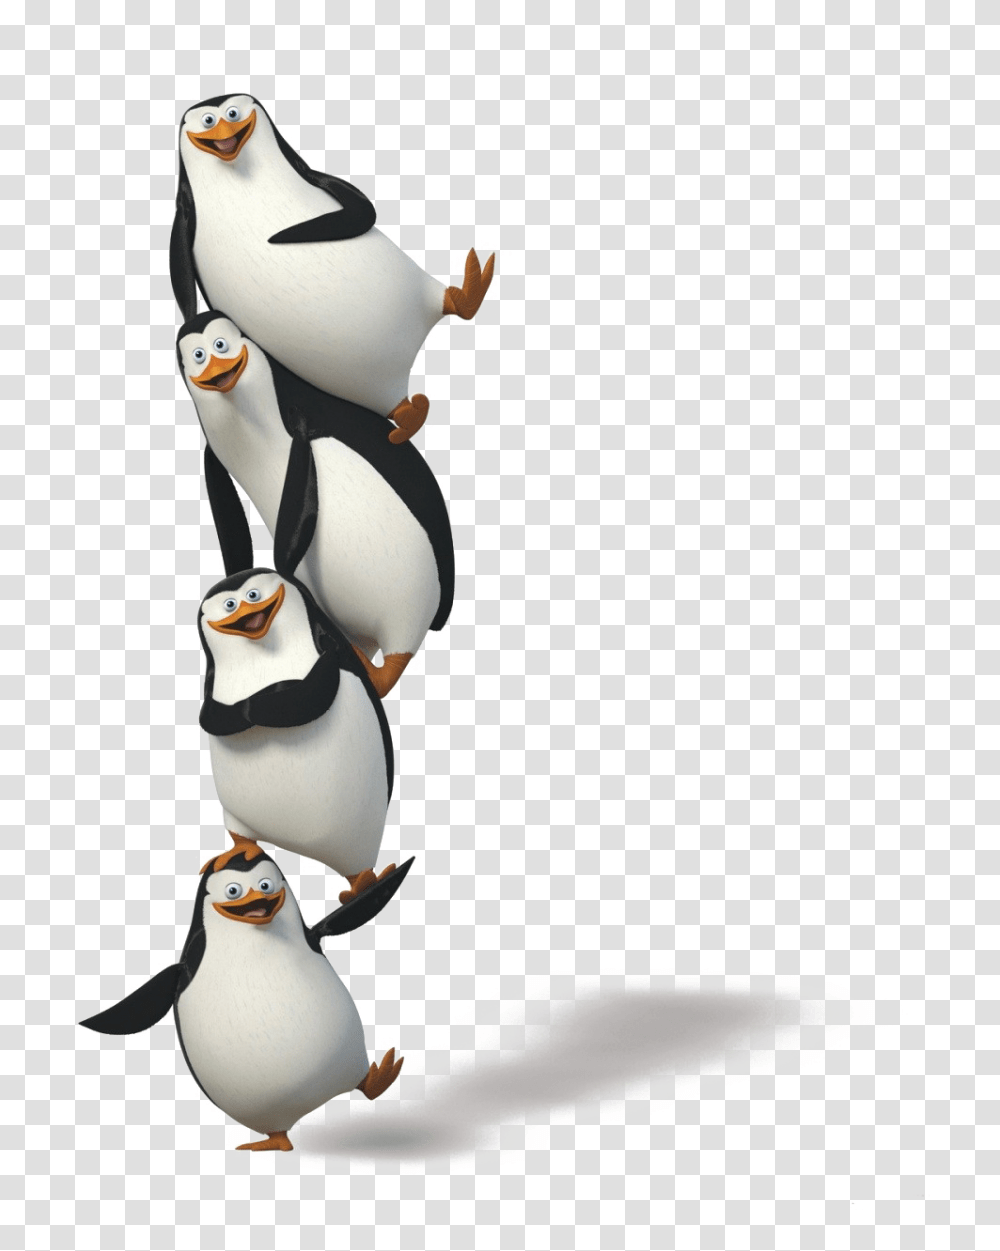 Madagascar Penguins, Character, Figurine, Bird, Animal Transparent Png